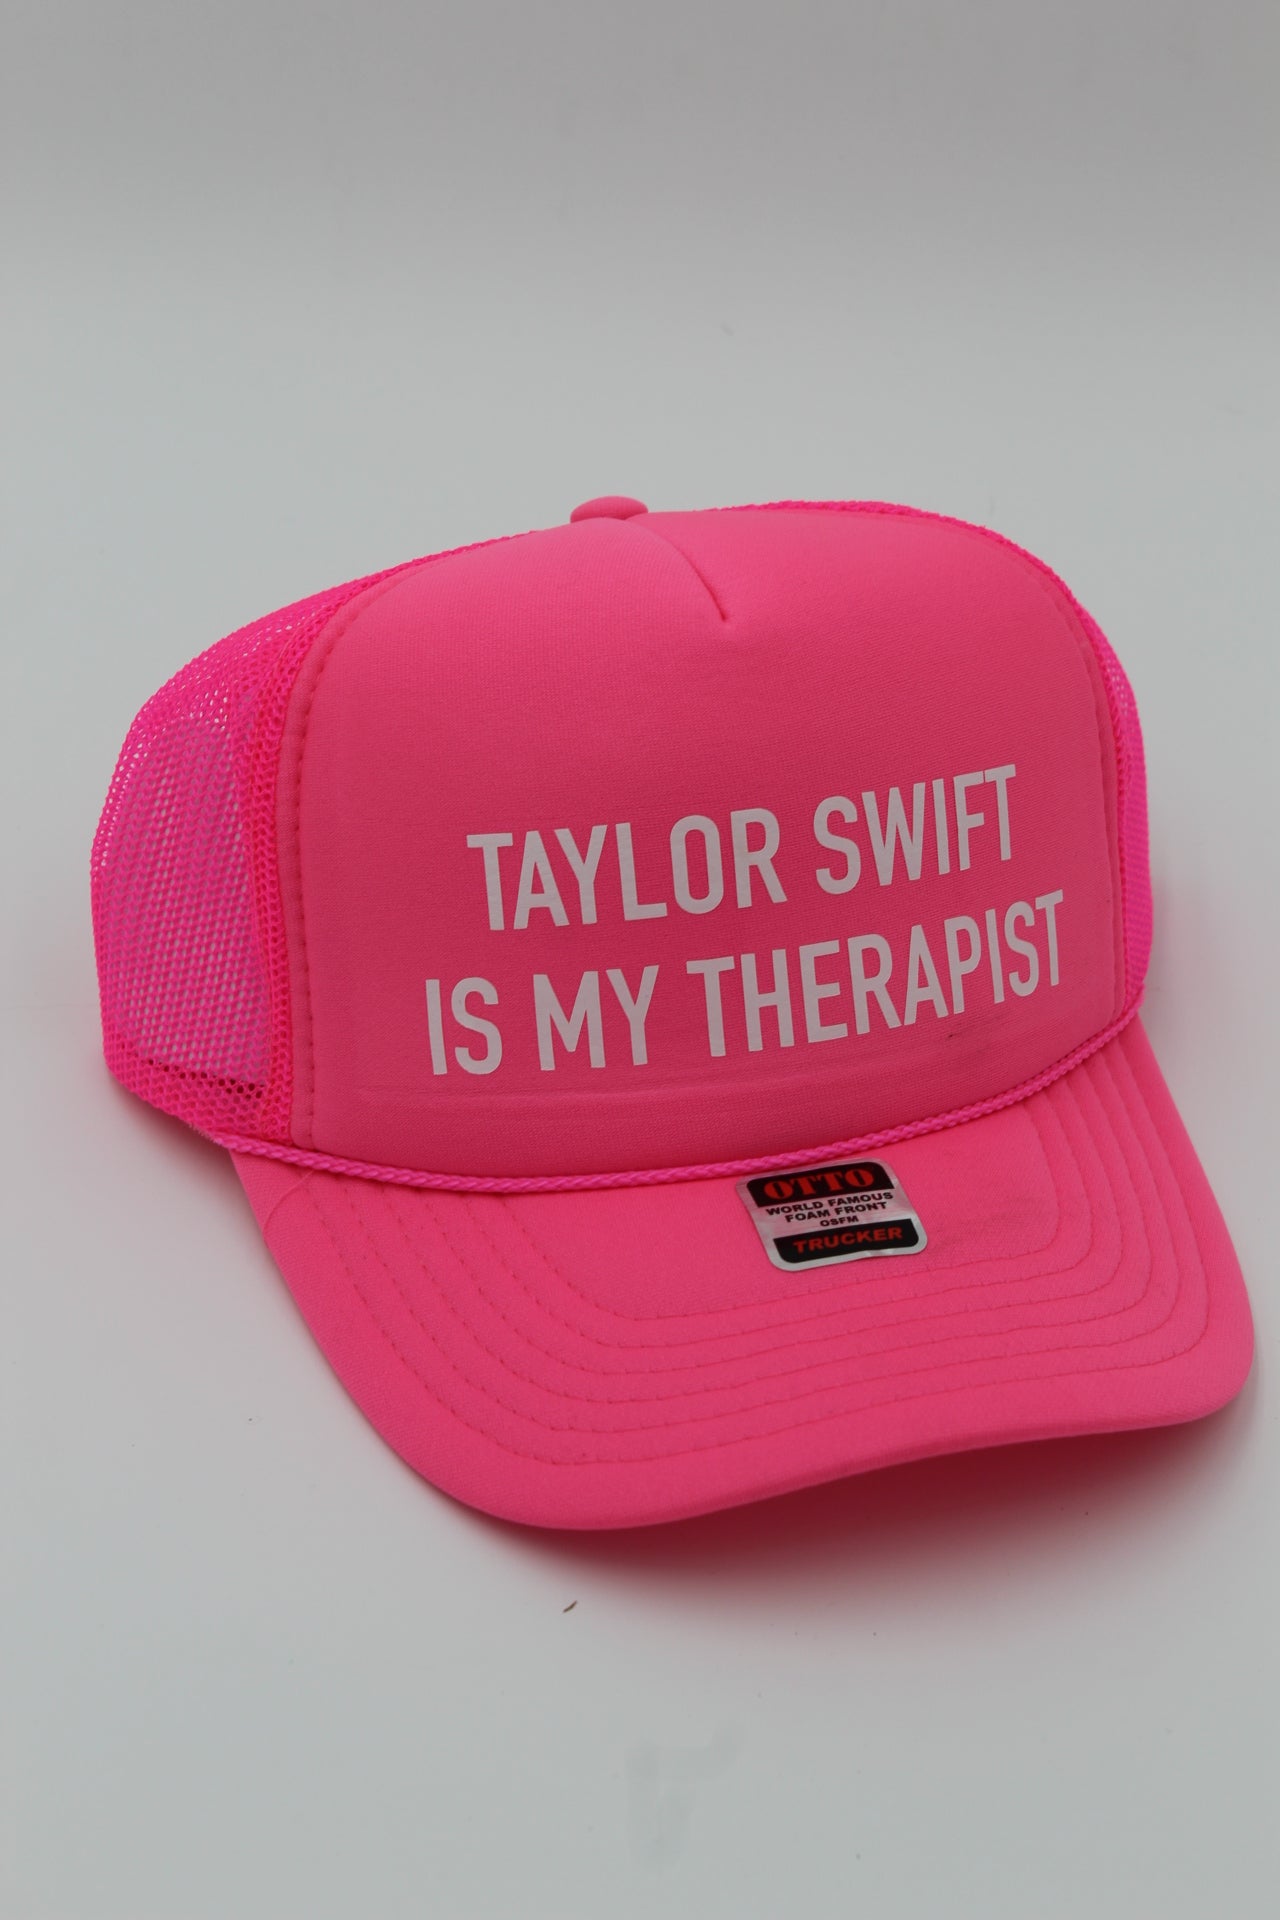 Taylor Swift is My Therapist Trucker Hat